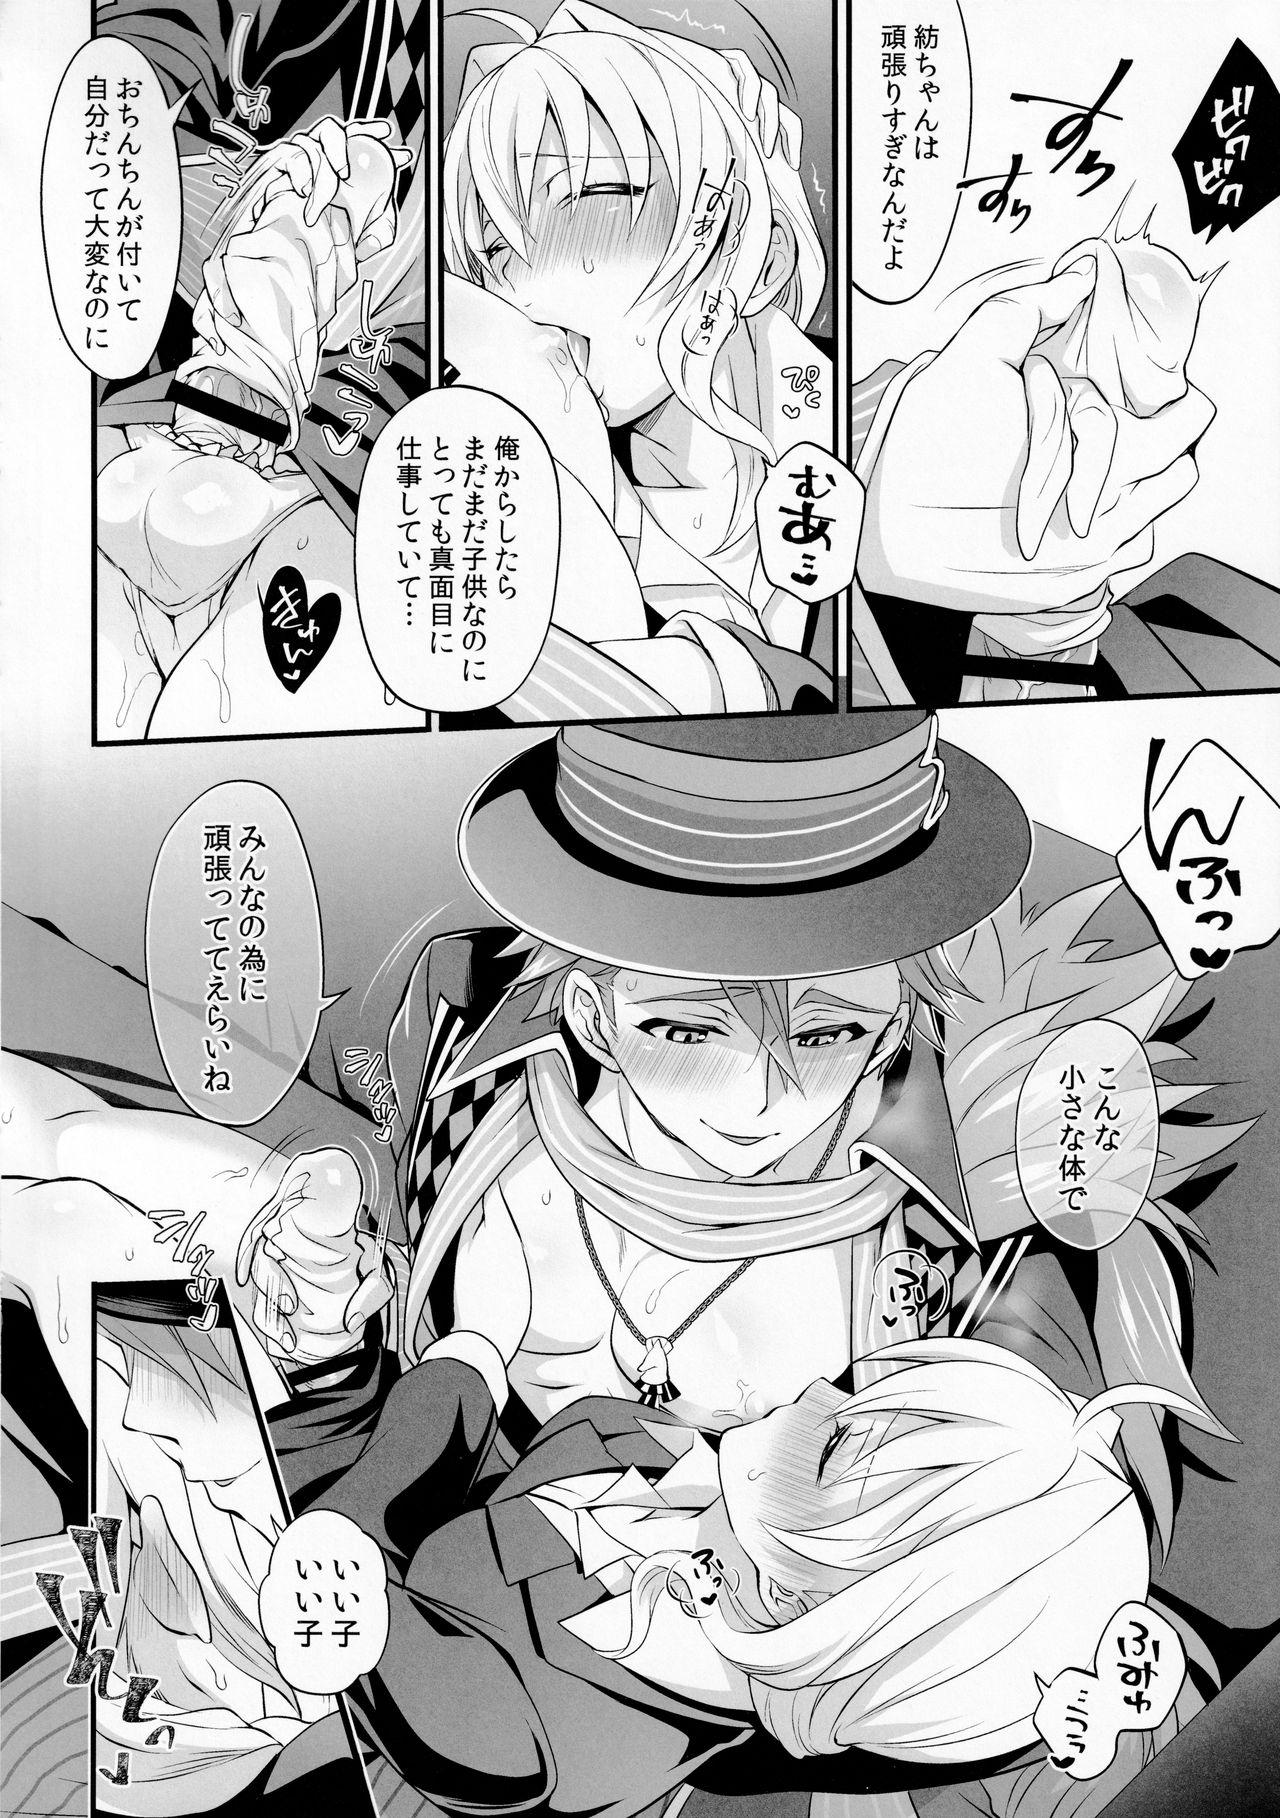 Self Watashi no Ochinchin ga Amaeta Gatterun desu! - Idolish7 Safado - Page 10